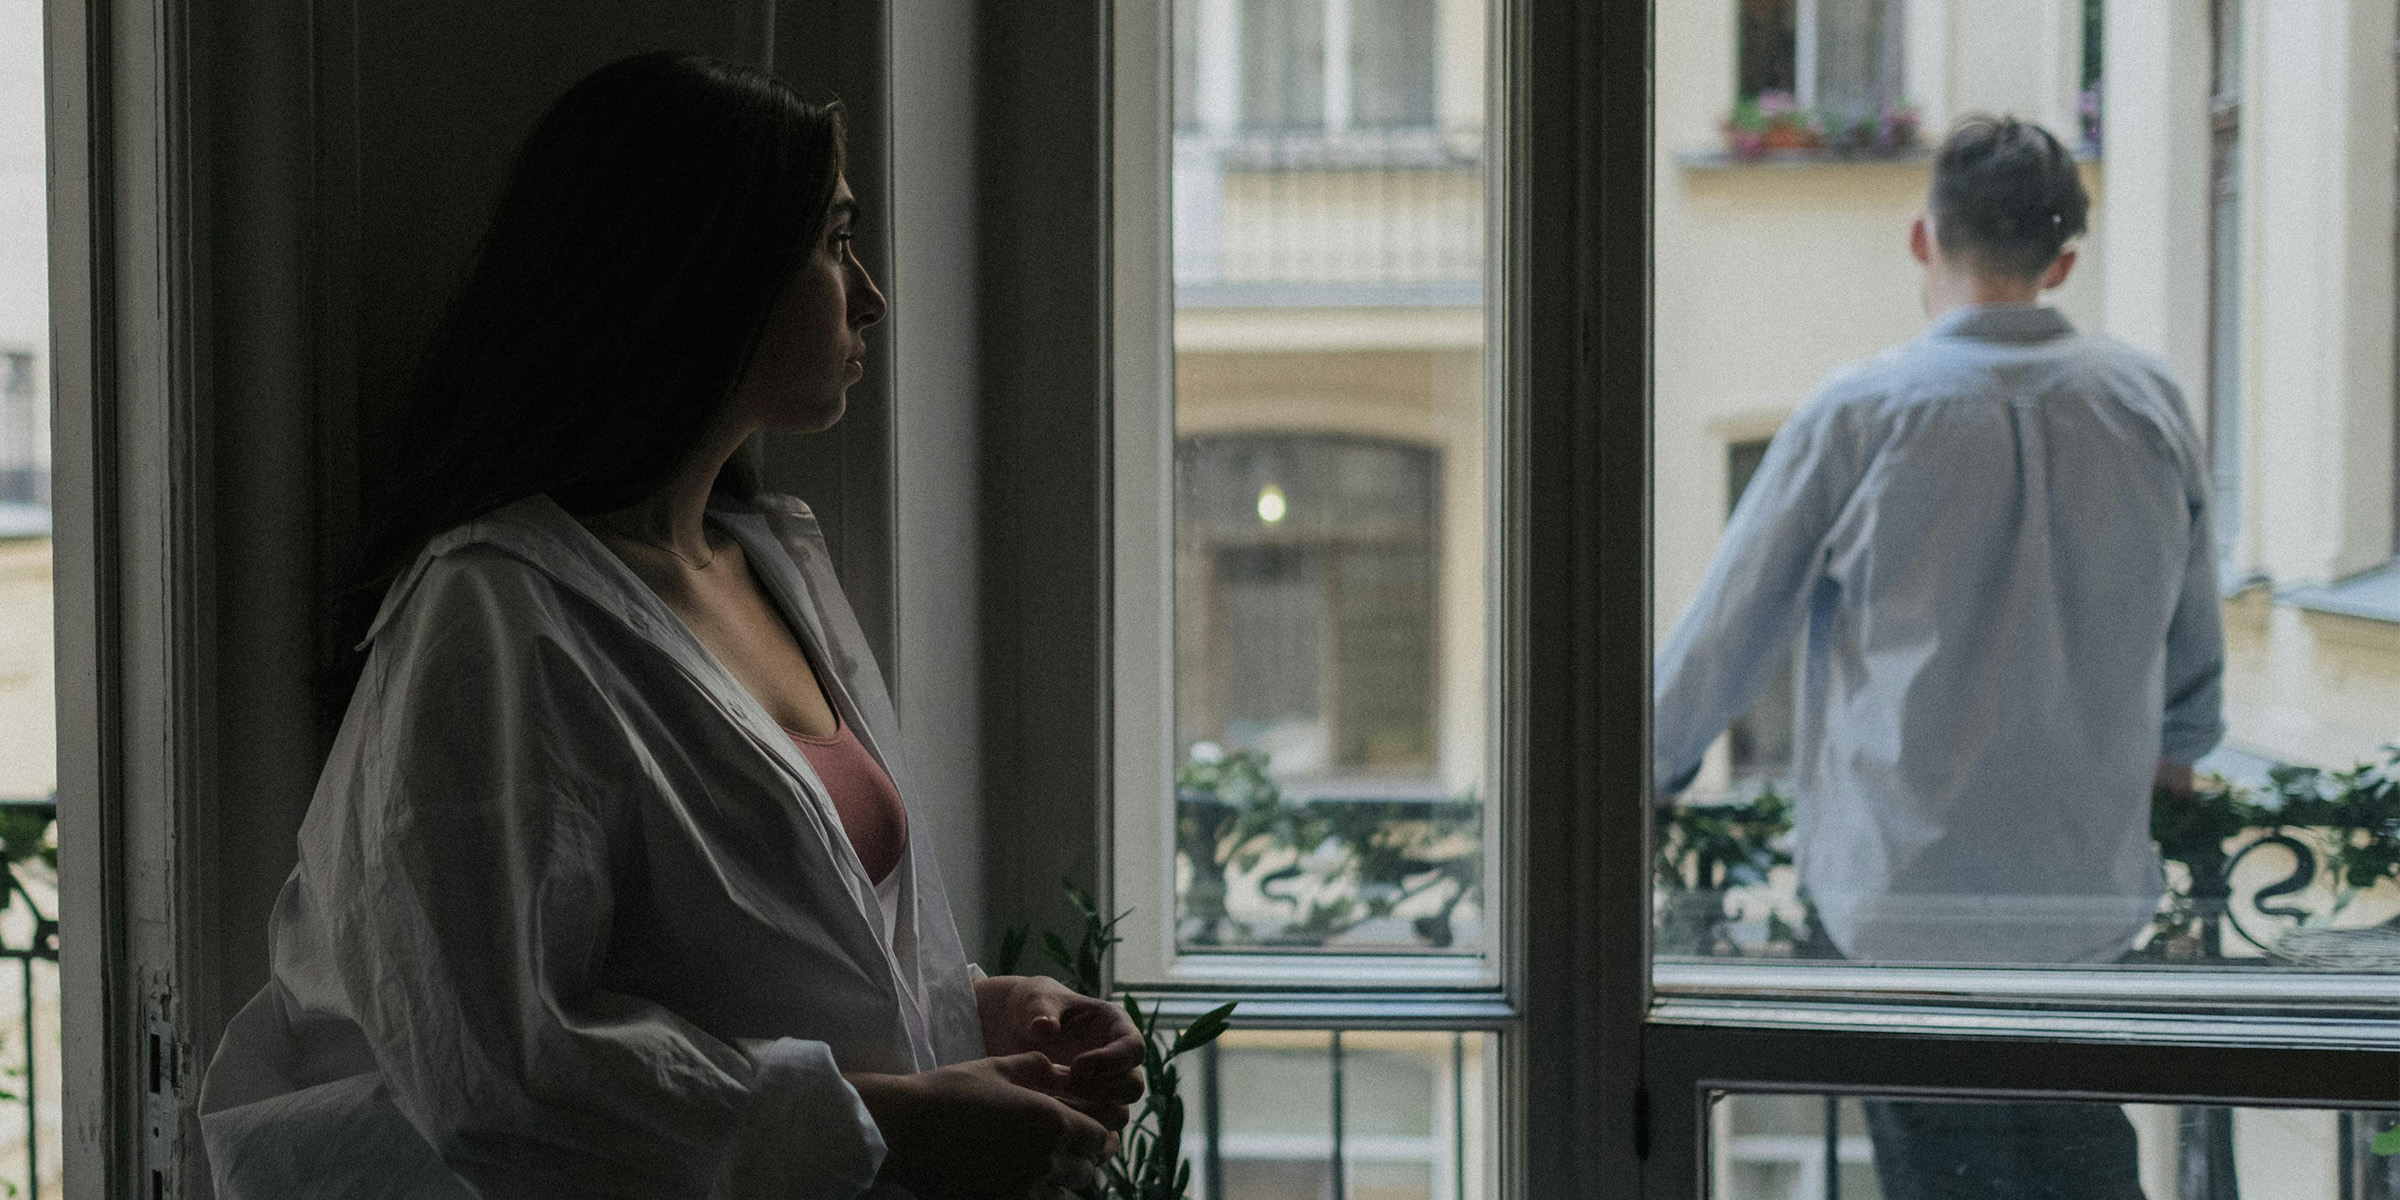 Femme observant un homme sur un balcon | Source : Pexels